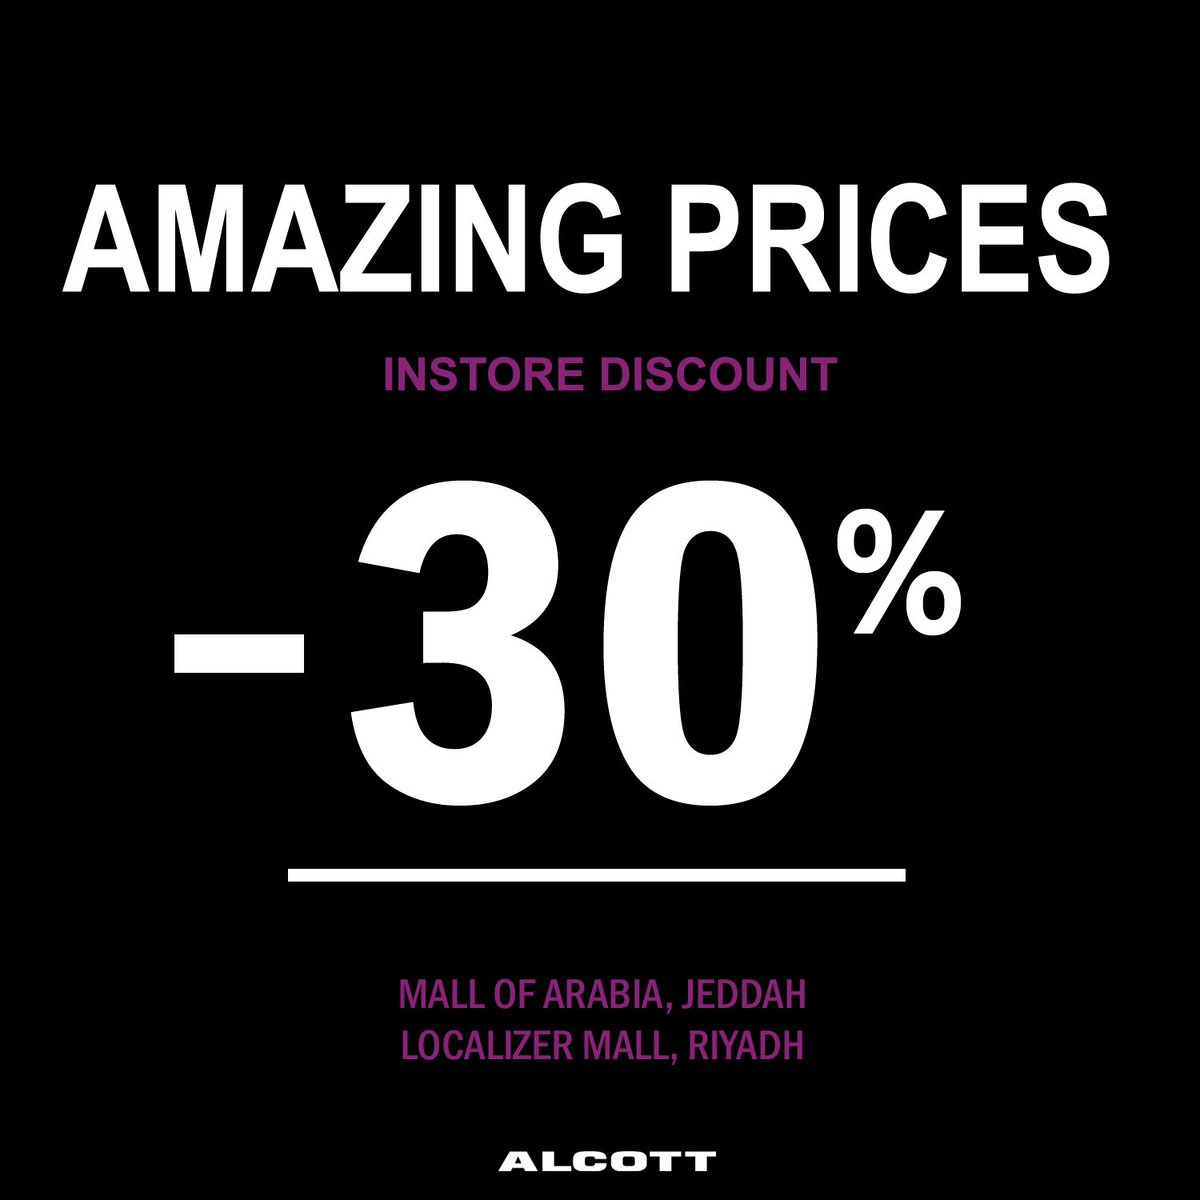 استمتع بأسعار ألكوت المذهلة، 30 % خصم بجميع الفروع.
Enjoy Alcott Amazing Prices with 30% instore discount.
#alcott.ksa #localizermall #mallofarabia #sale #تسوق_السعودية #تسوق